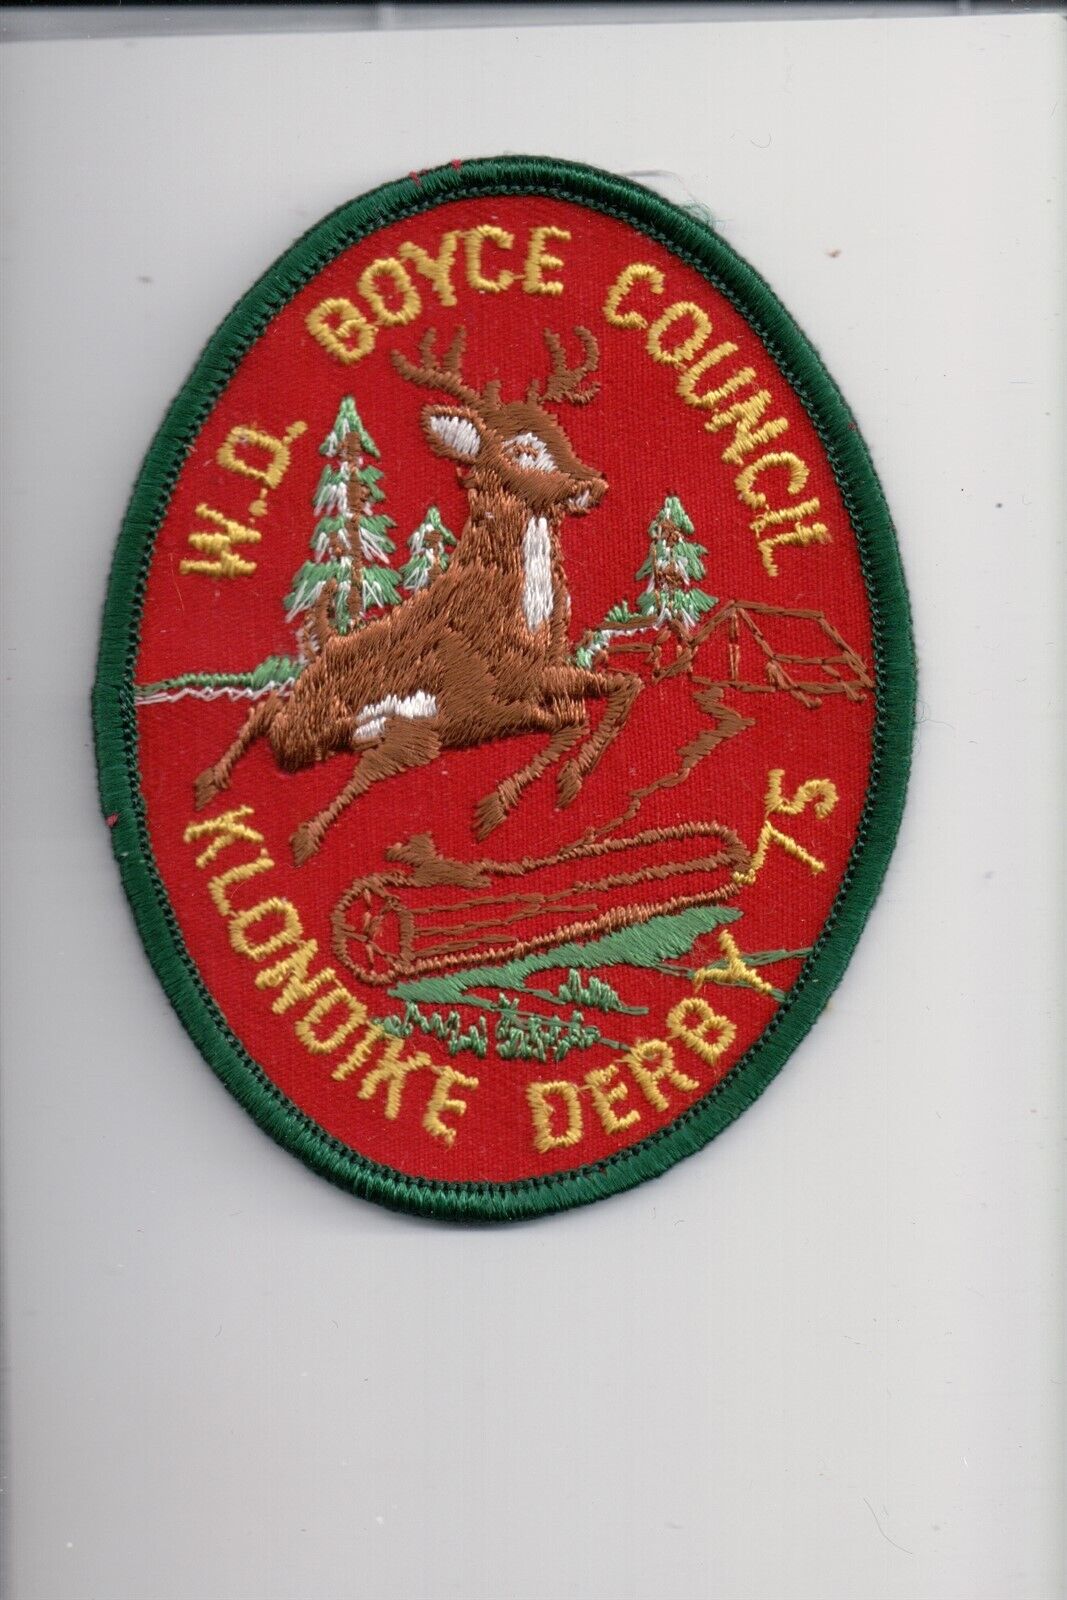 1975 W.D. Boyce Council Klondike Derby patch